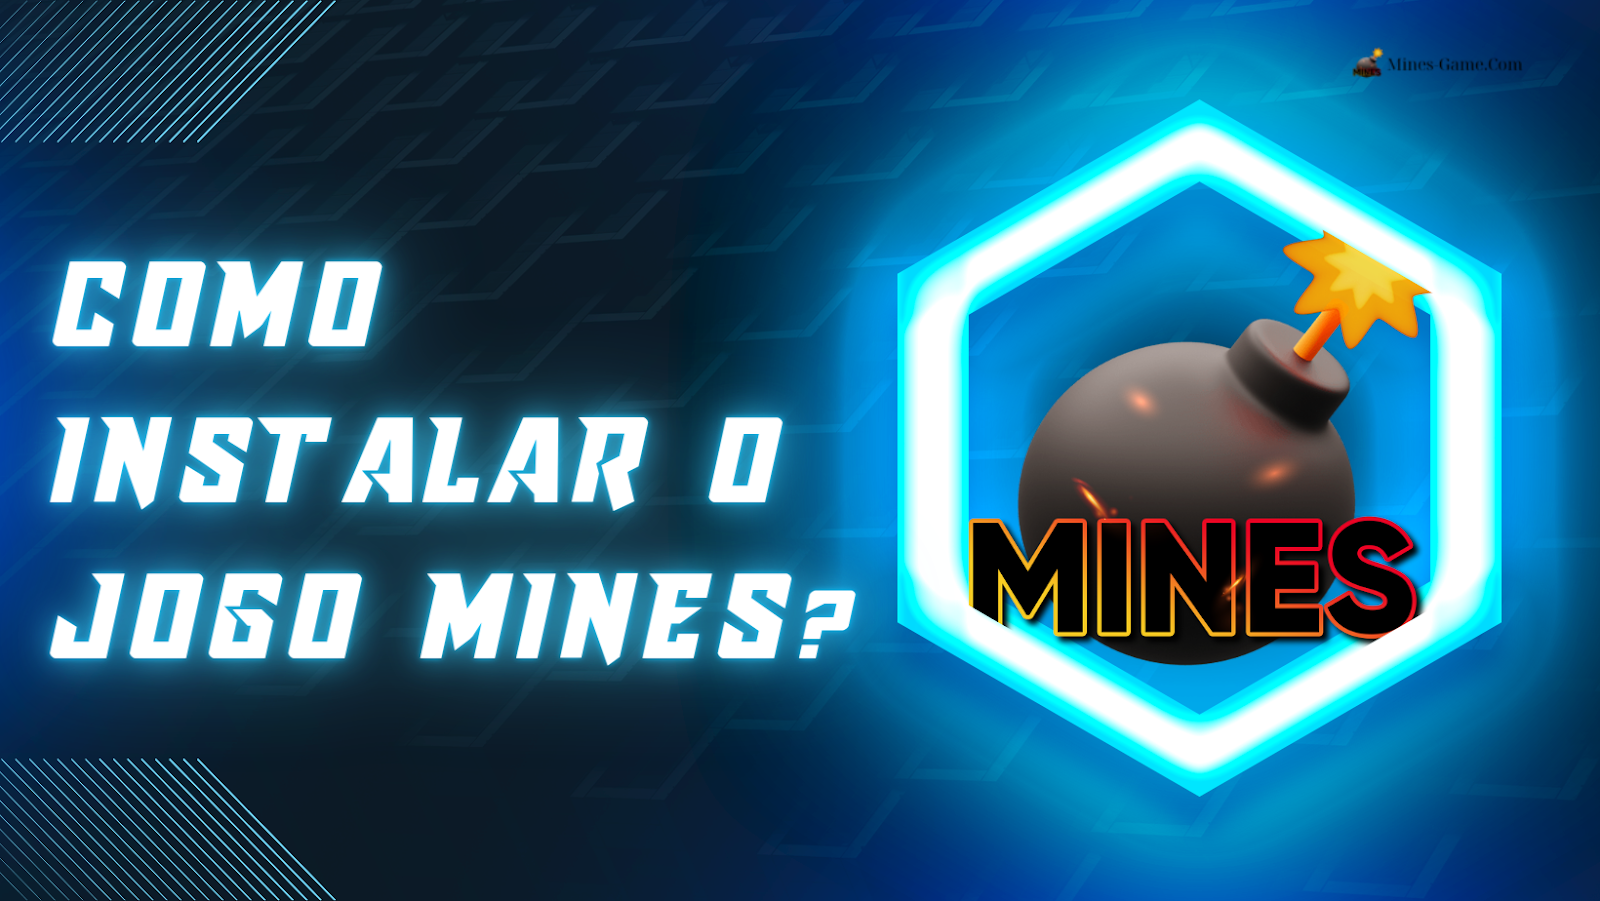 Mines Aposta Online, Jogo da Bombinha